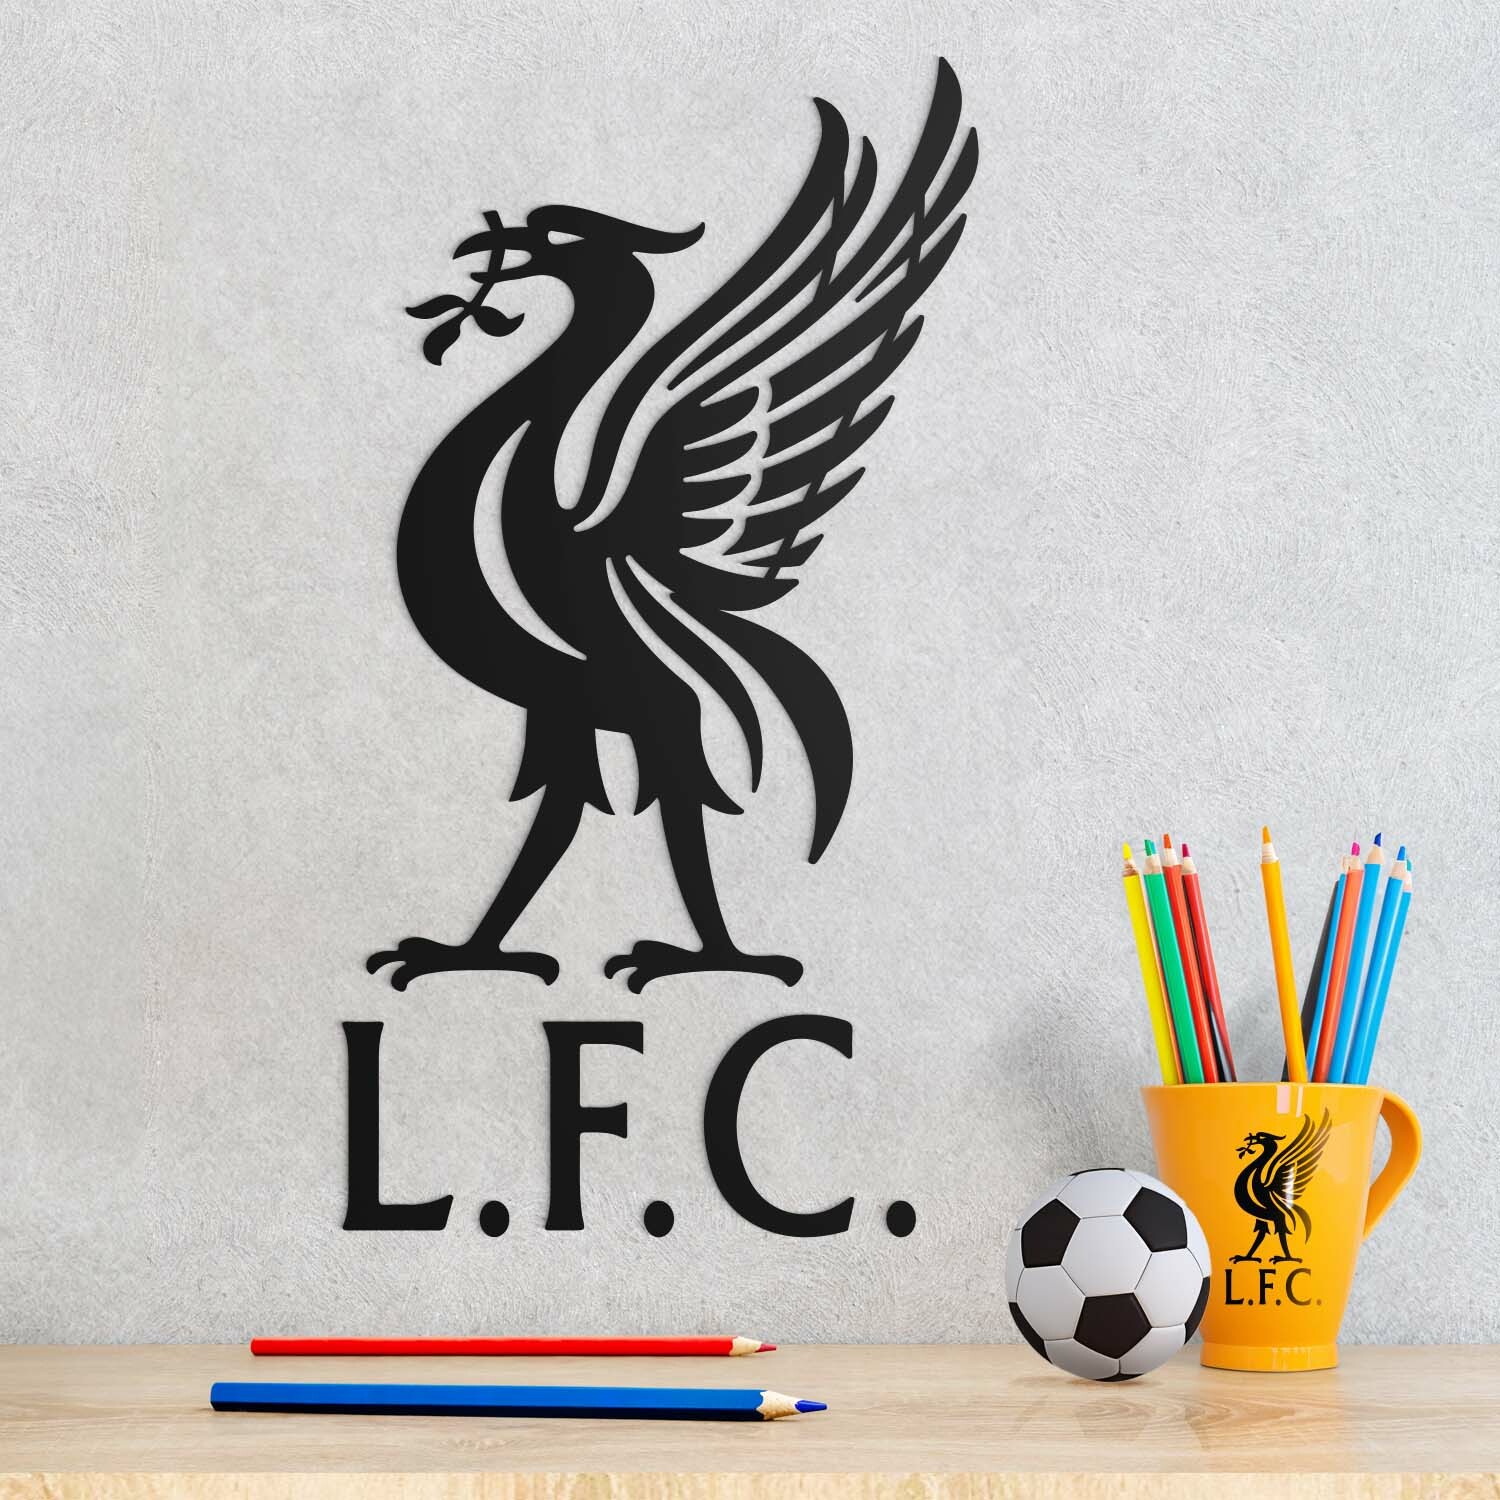 Nalepovací logo fotbalového klubu - Liverpool